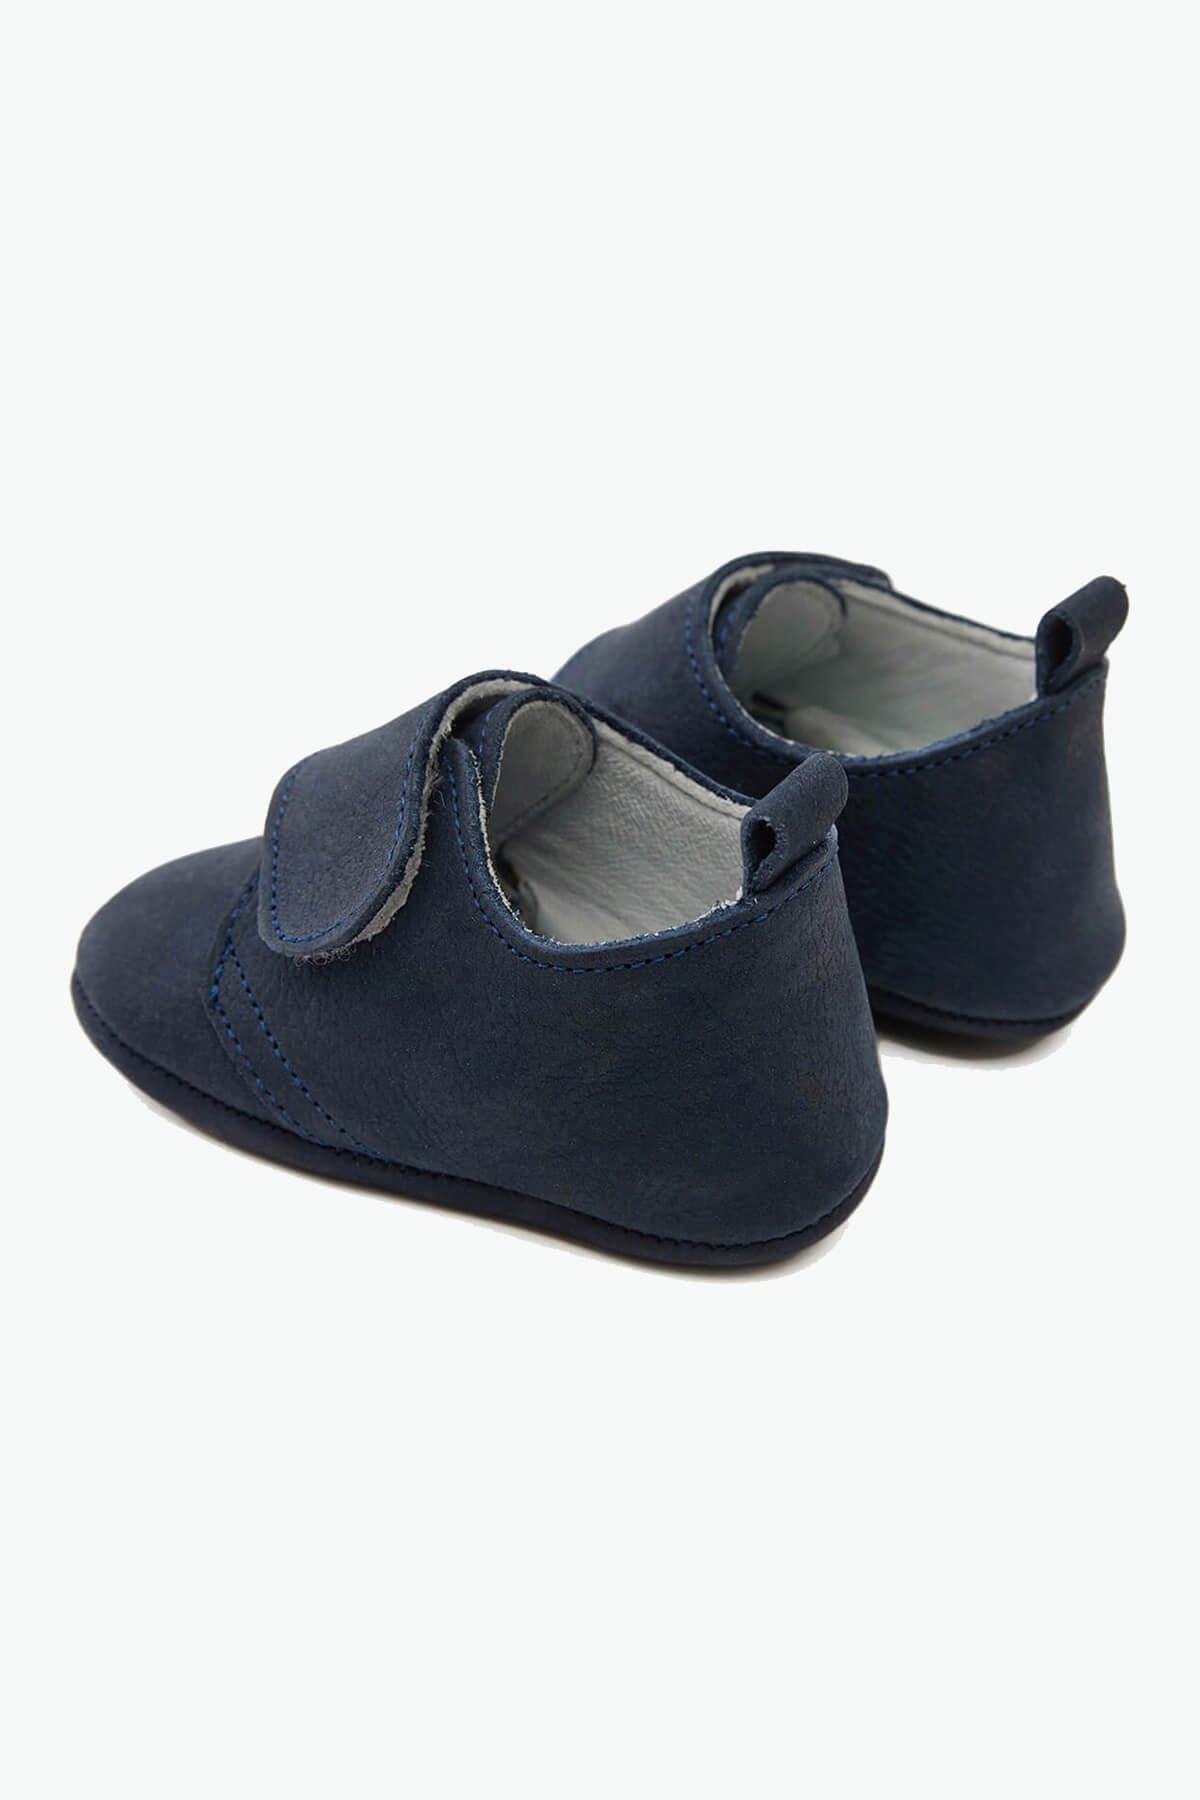 Детская обувь из натуральной кожи на липучках темно-синего цвета